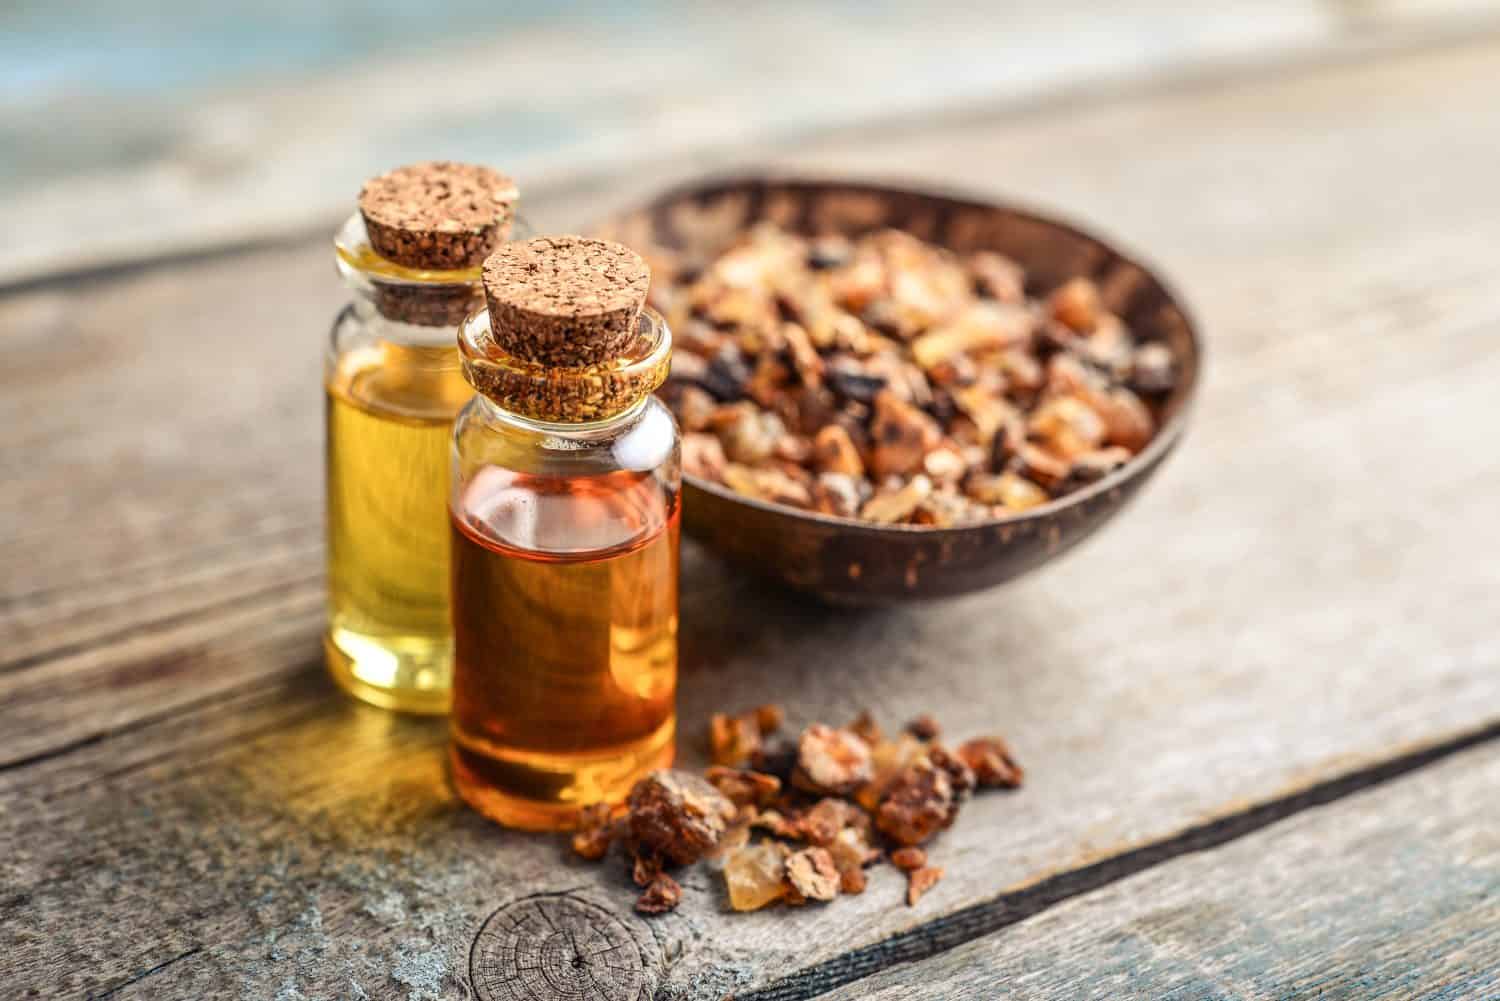 A bottle of myrrh essential oil with myrrh resin on a wooden background